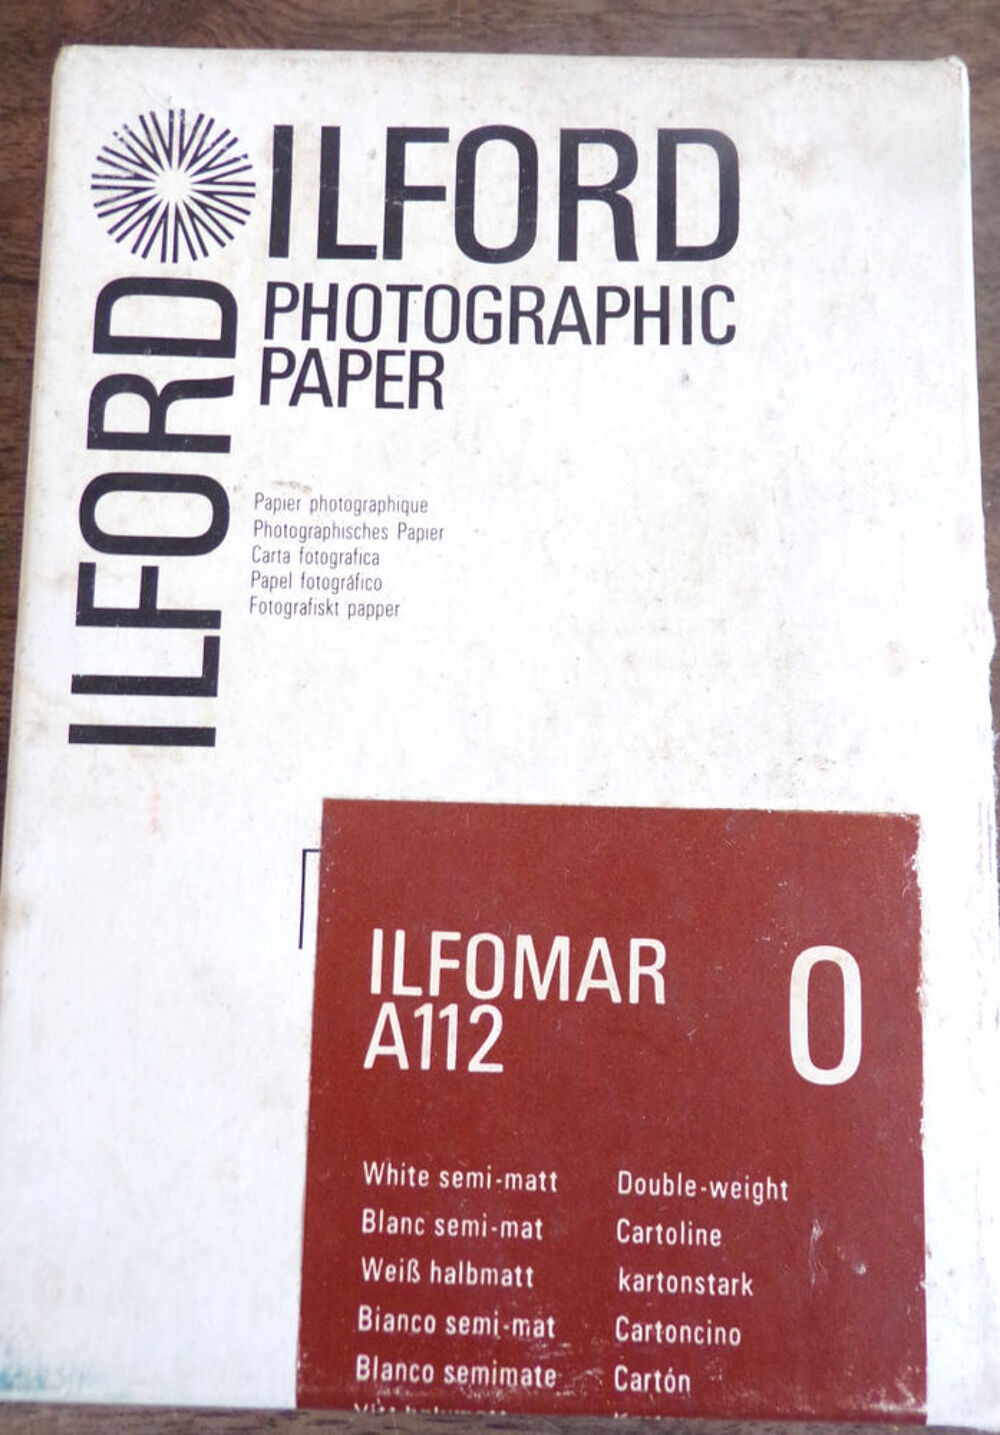 Ilford papier photographique argentique A112 blanc semi-mat Photos/Video/TV